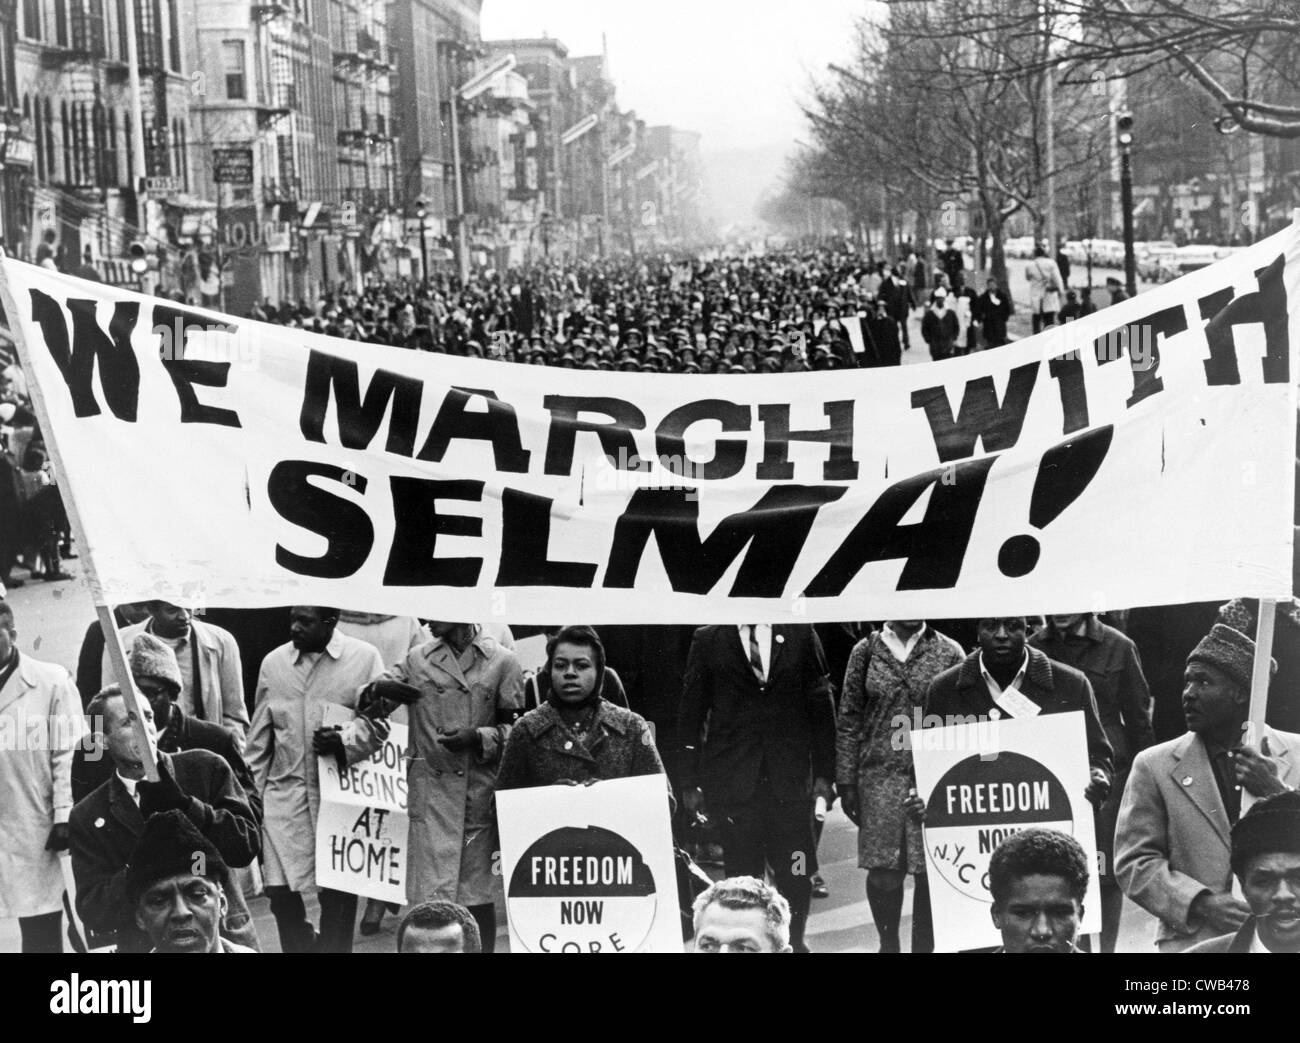 Les droits civils, les marcheurs portant bannière nous mars avec Selma ! Sur la rue à Harlem, New York City. Photo par Stanley Wolfson, 1965 Banque D'Images